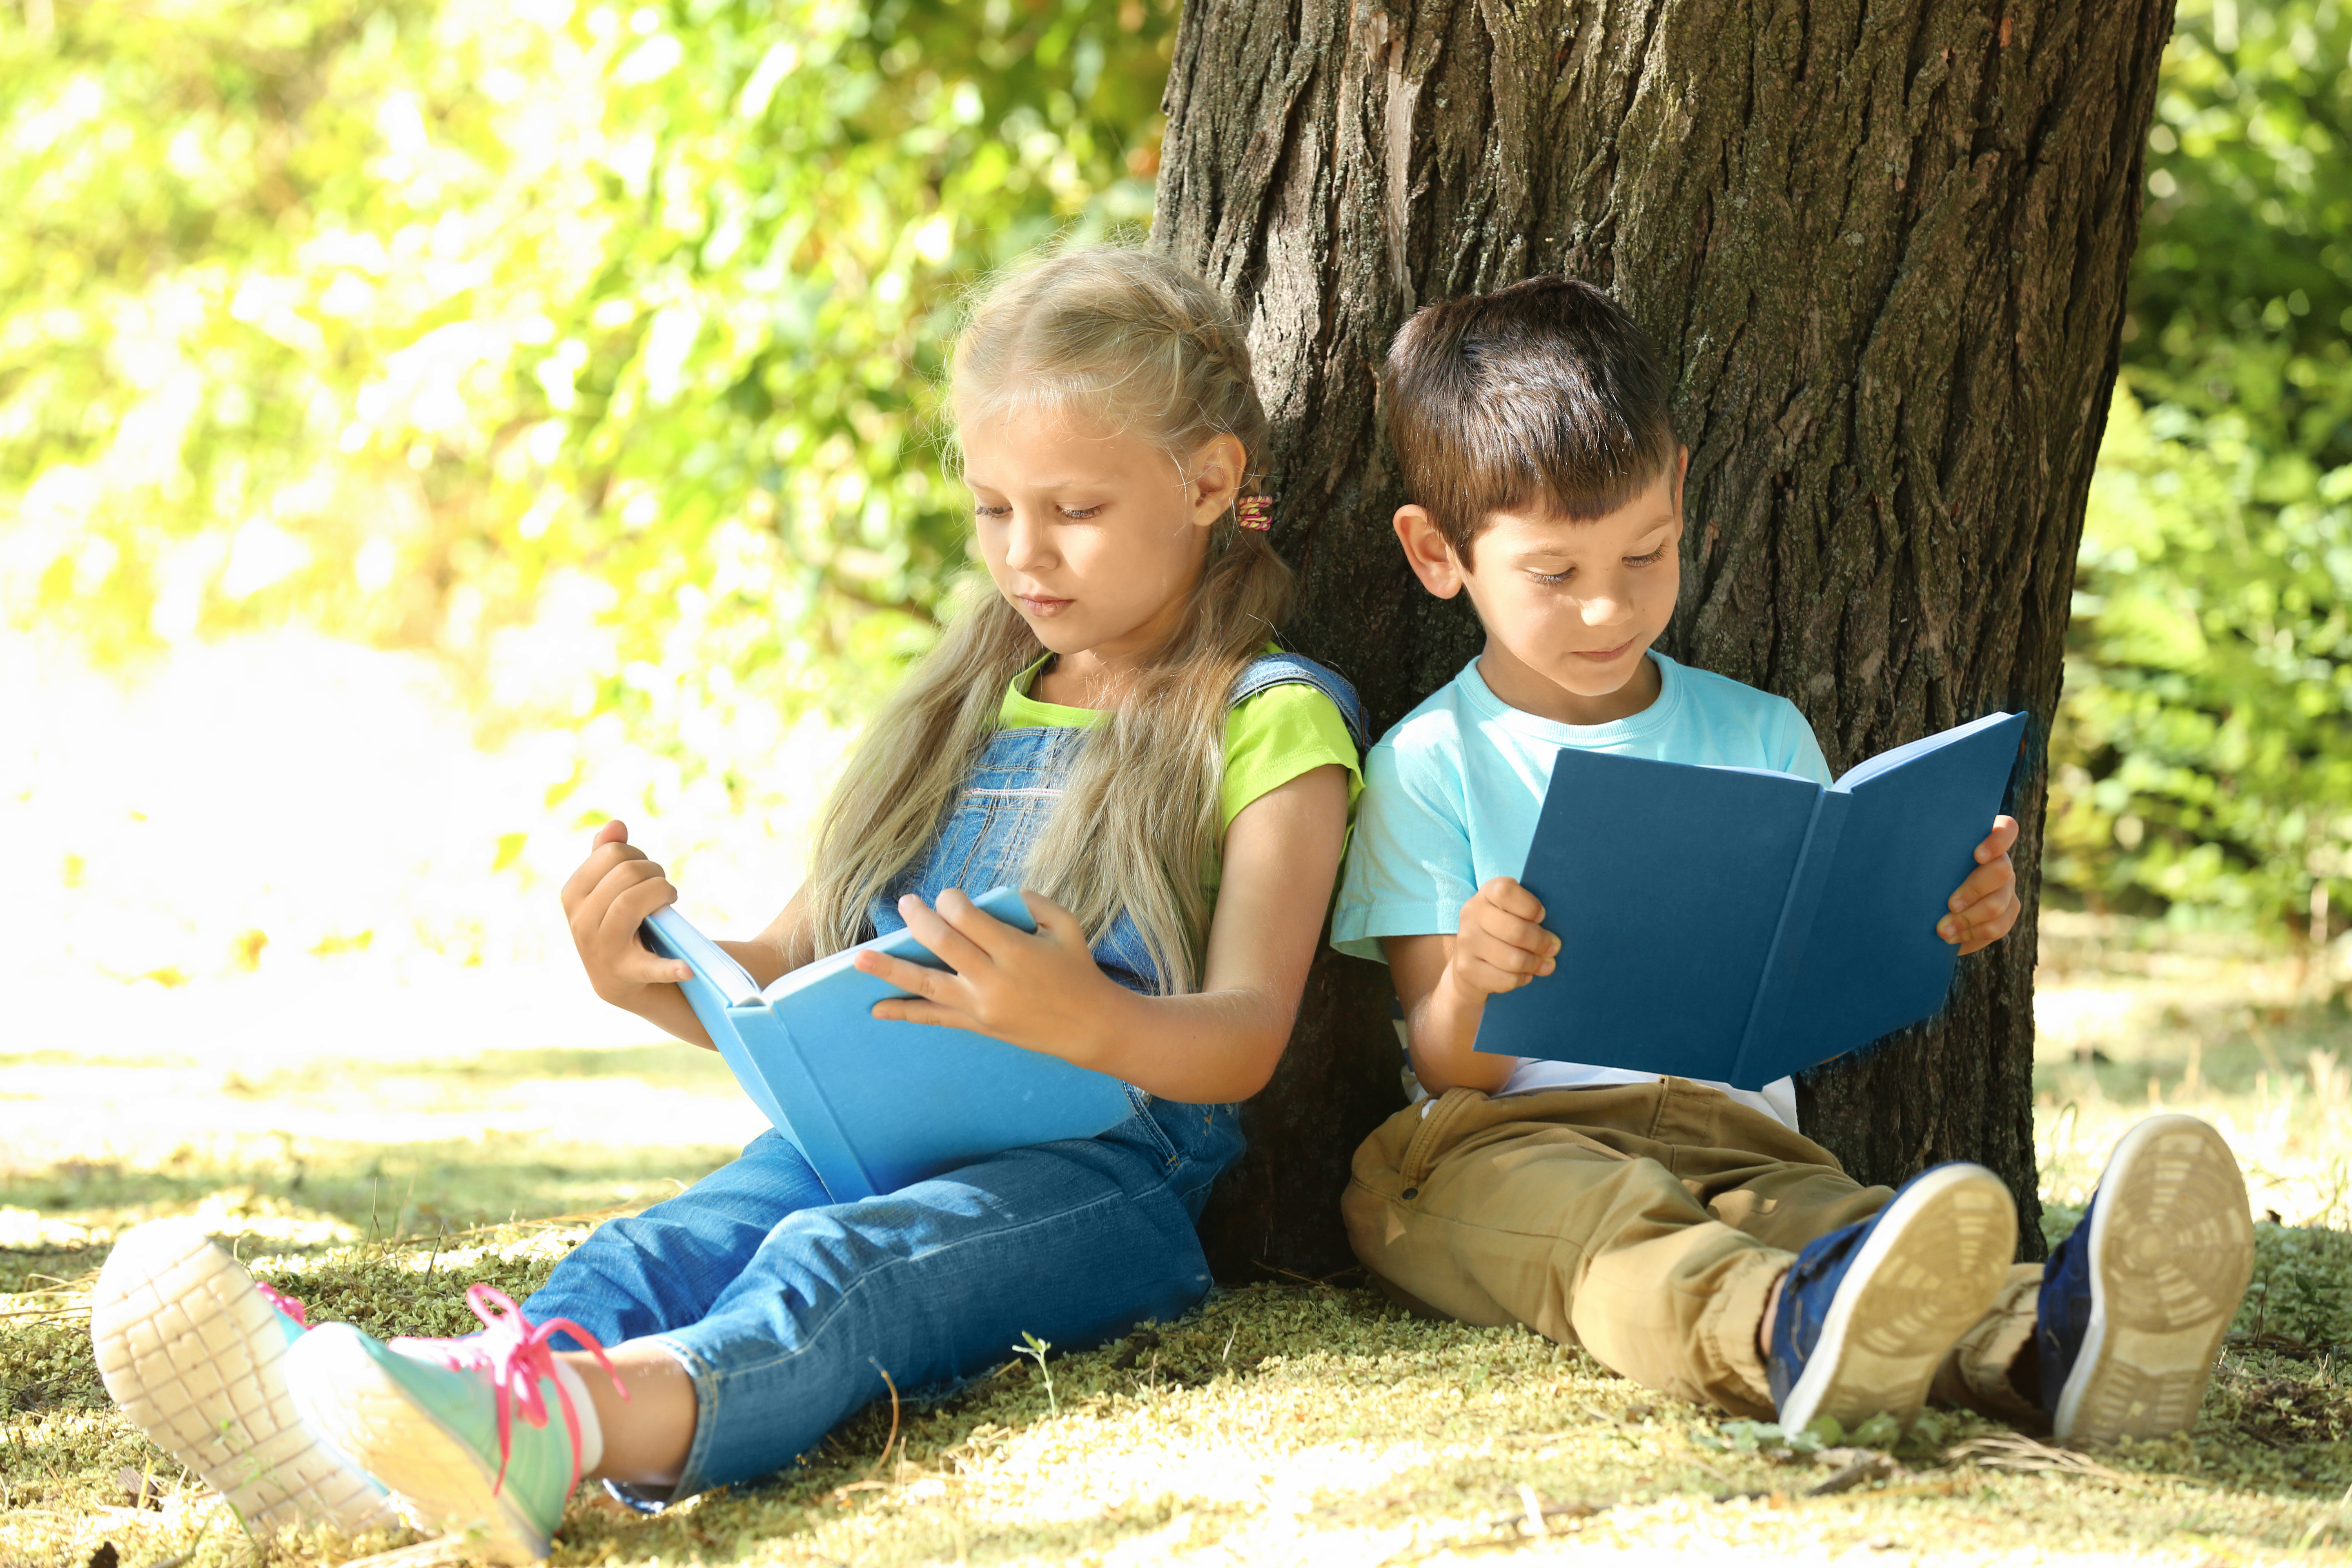 Nurture children's love of reading